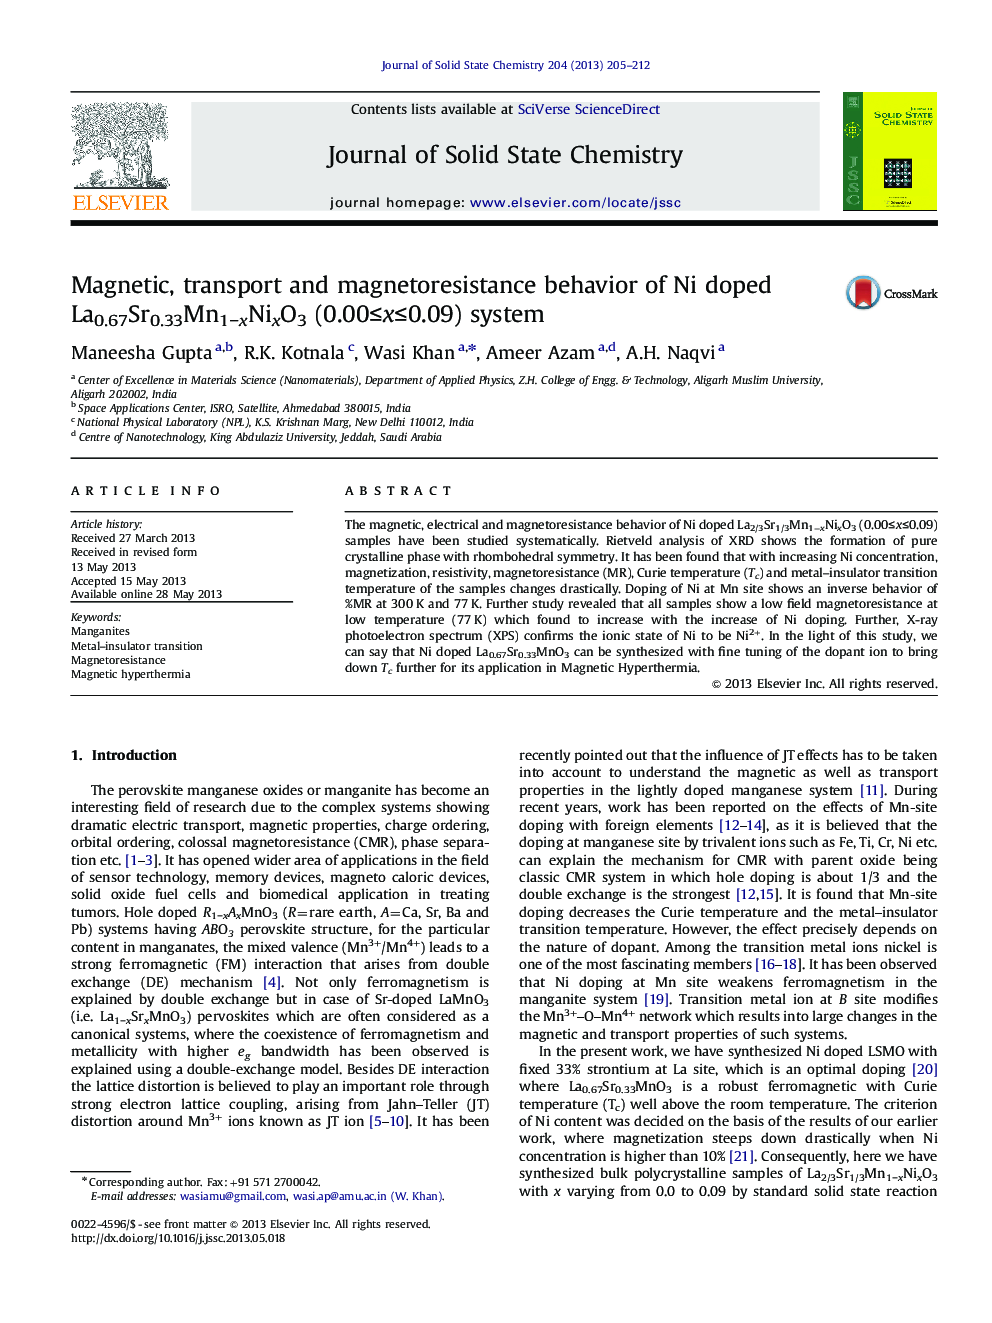 Magnetic, transport and magnetoresistance behavior of Ni doped La0.67Sr0.33Mn1âxNixO3 (0.00â¤xâ¤0.09) system